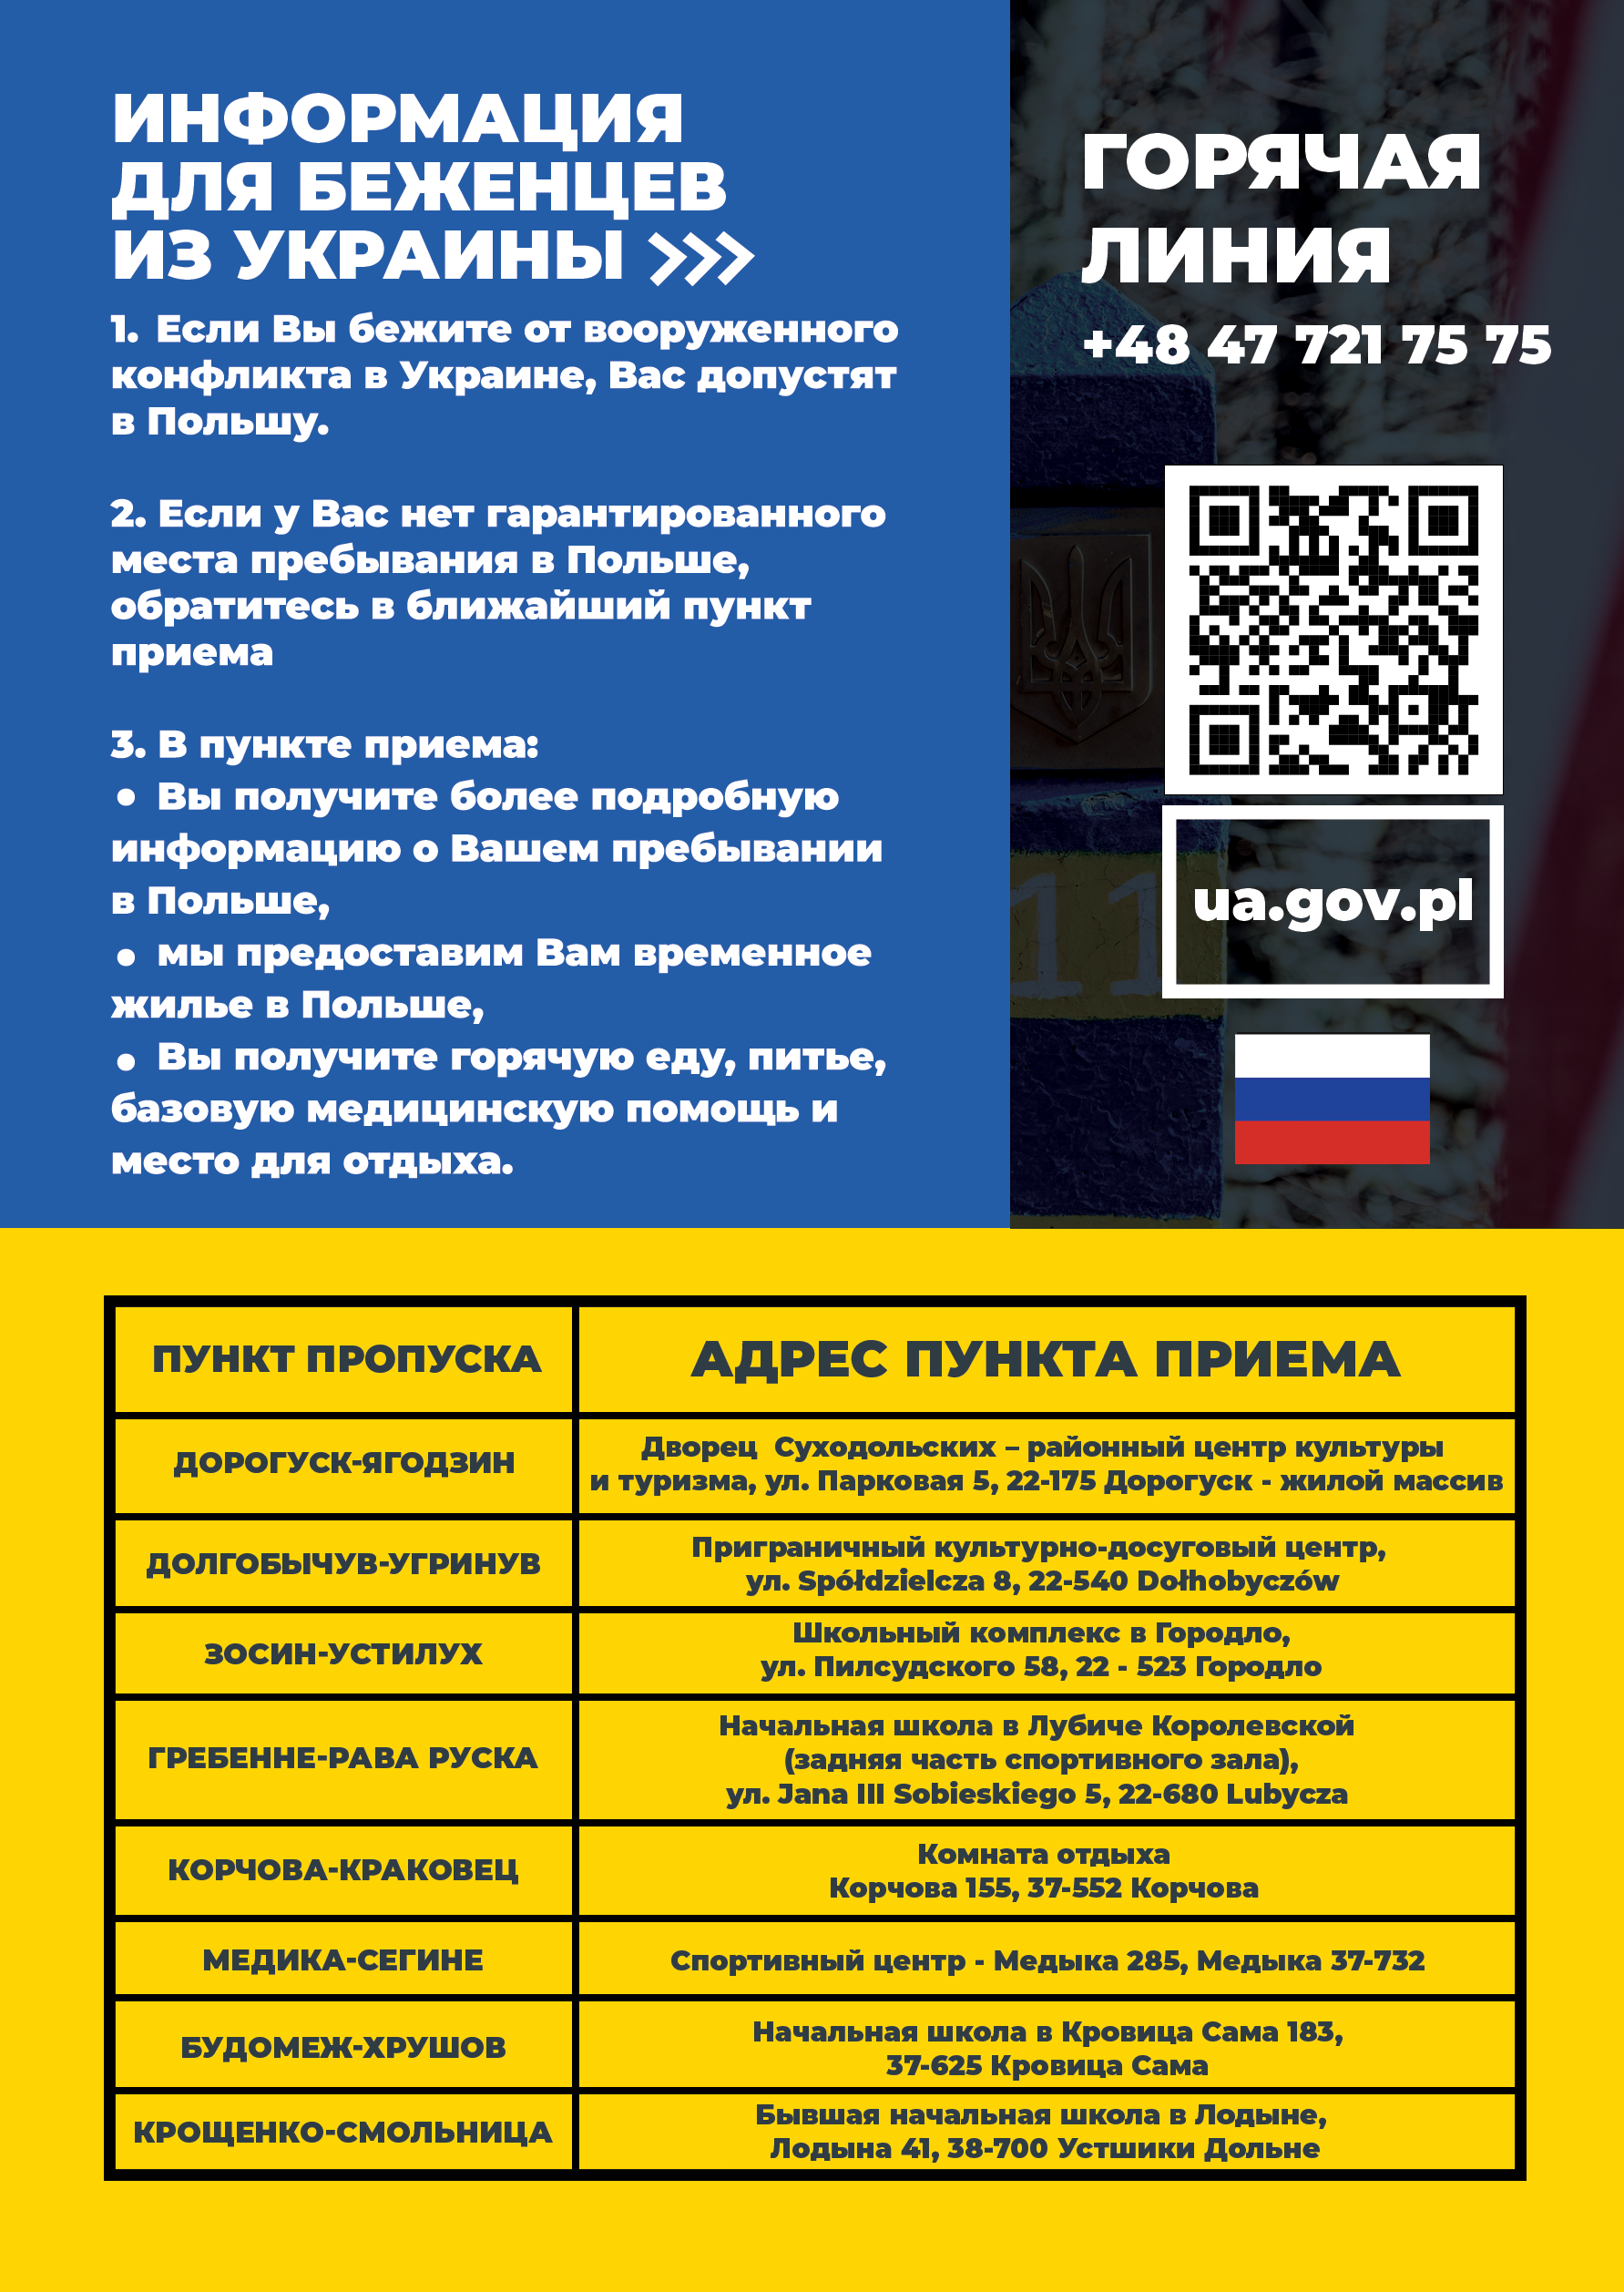 informacja w formie plakatu w języku rosyjskim